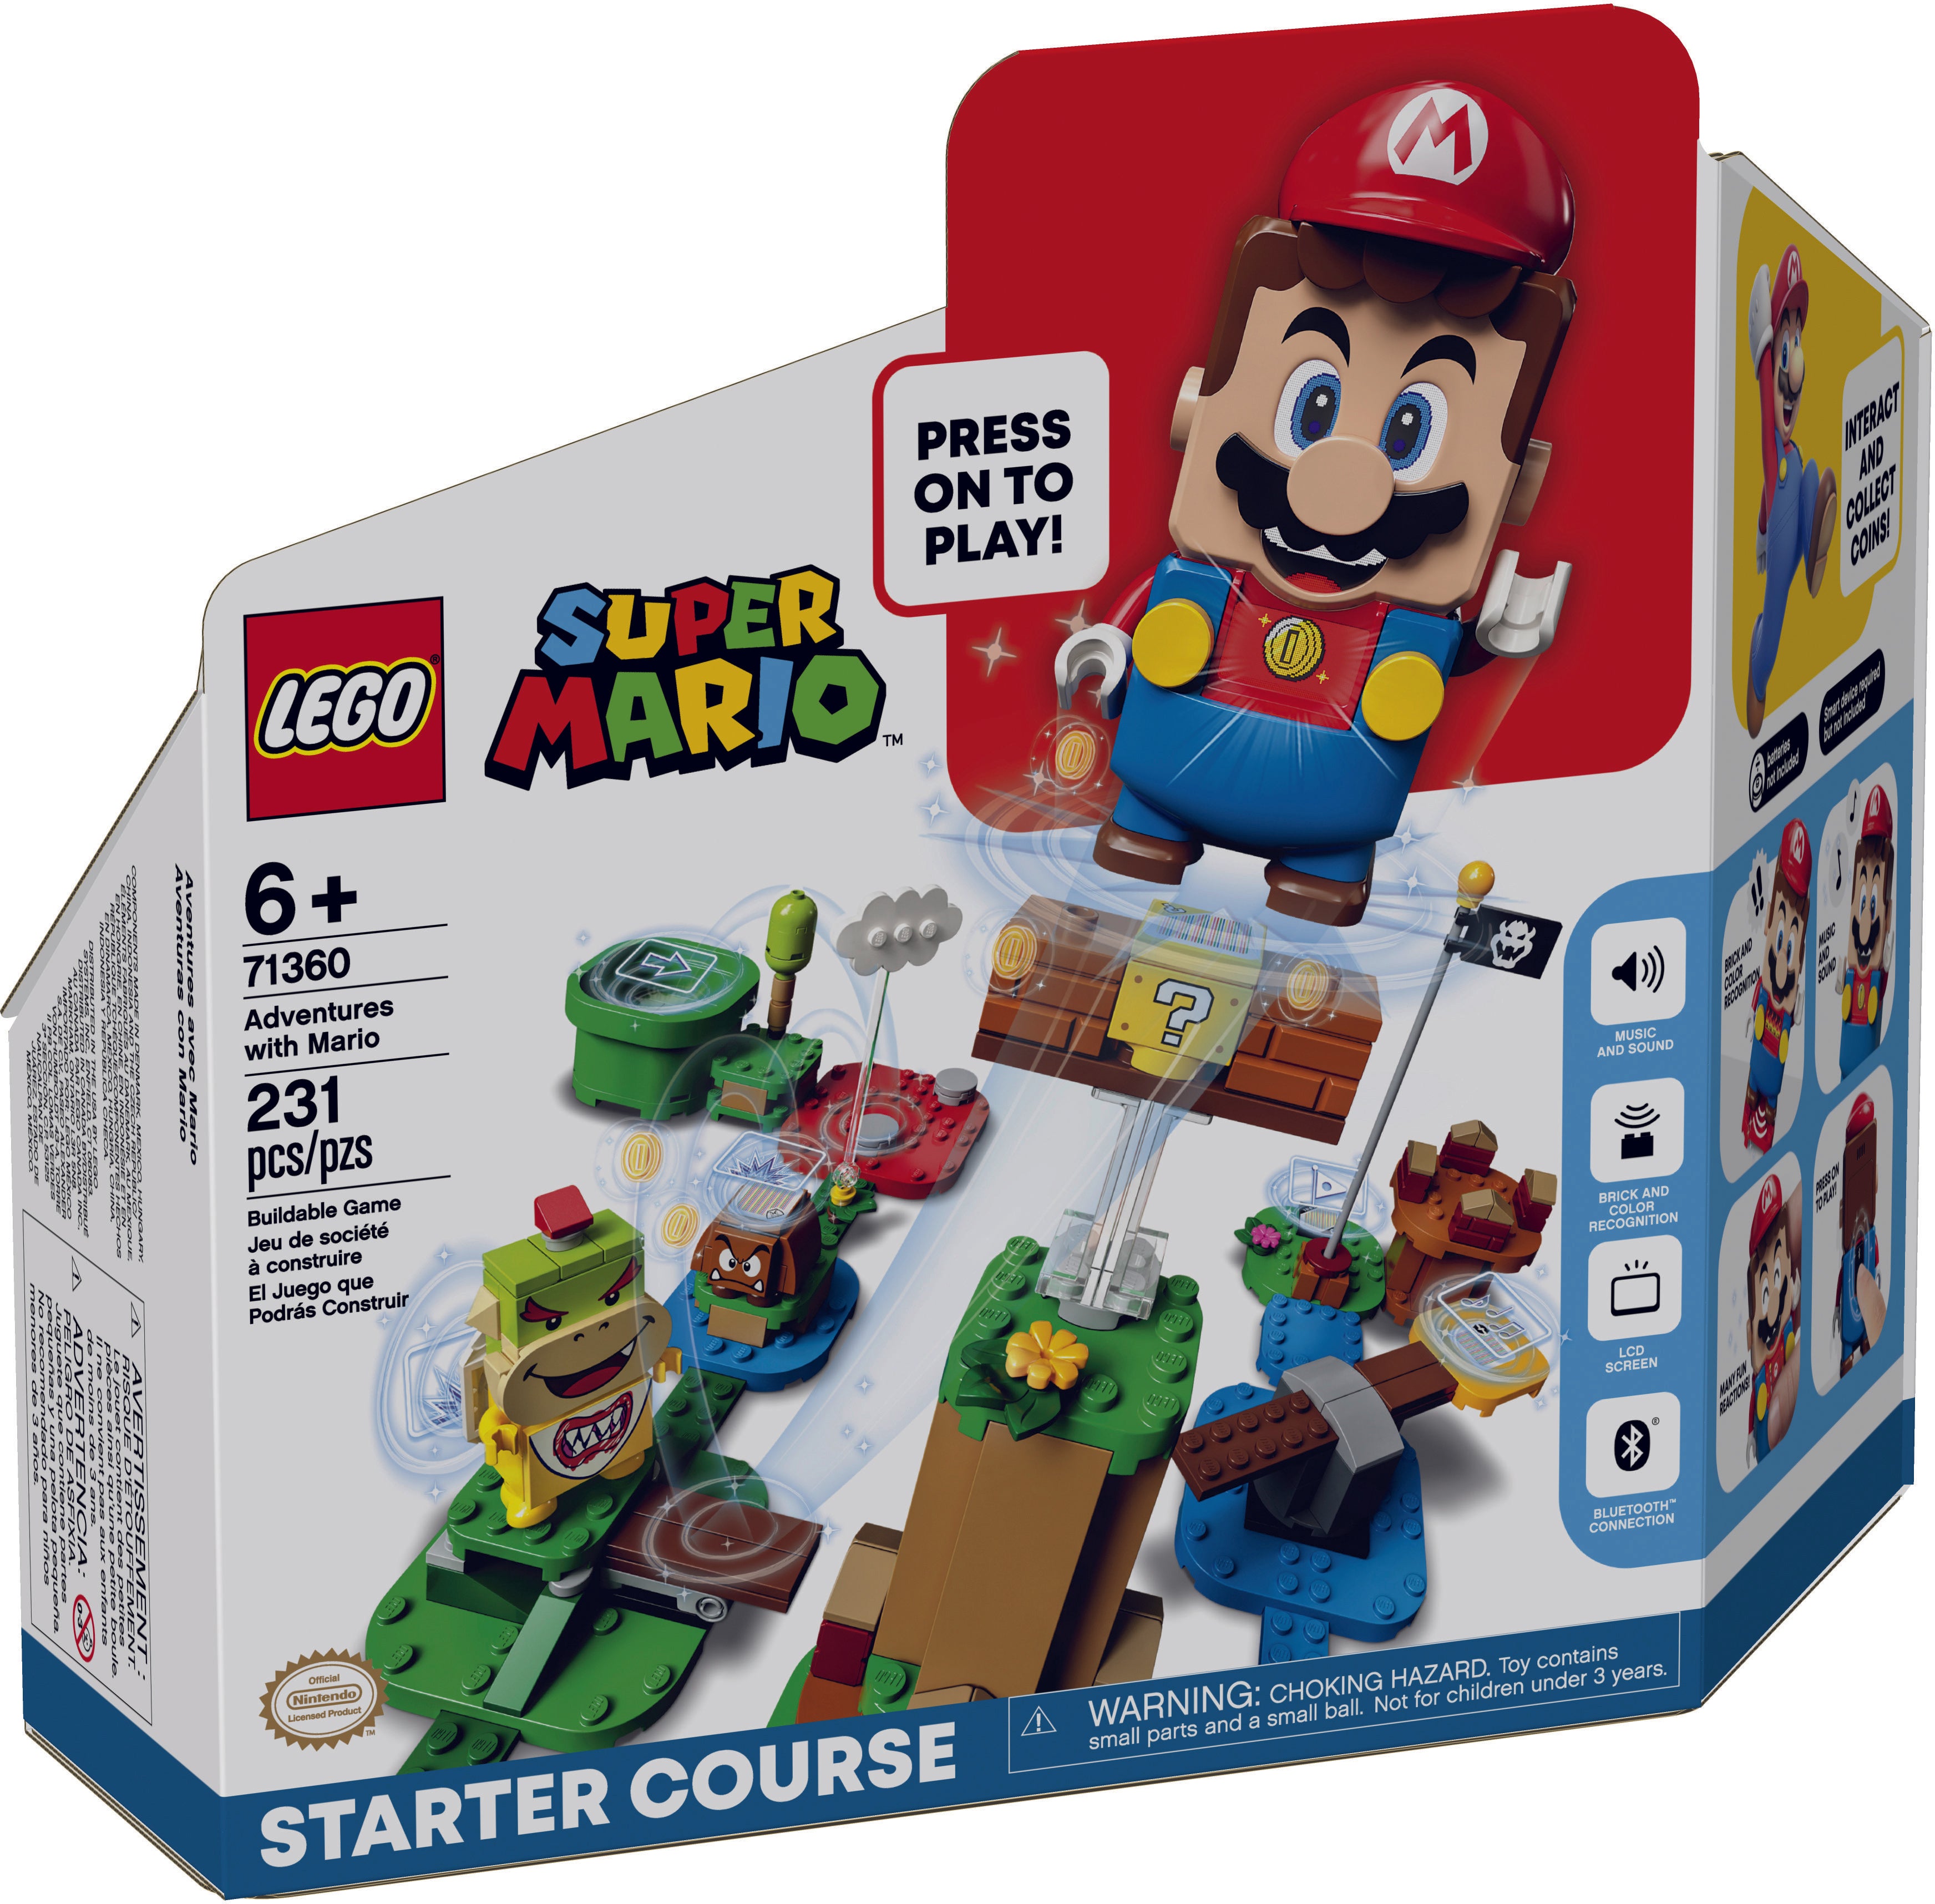 LEGO: Super Mario - Adventures with Mario Starter Course